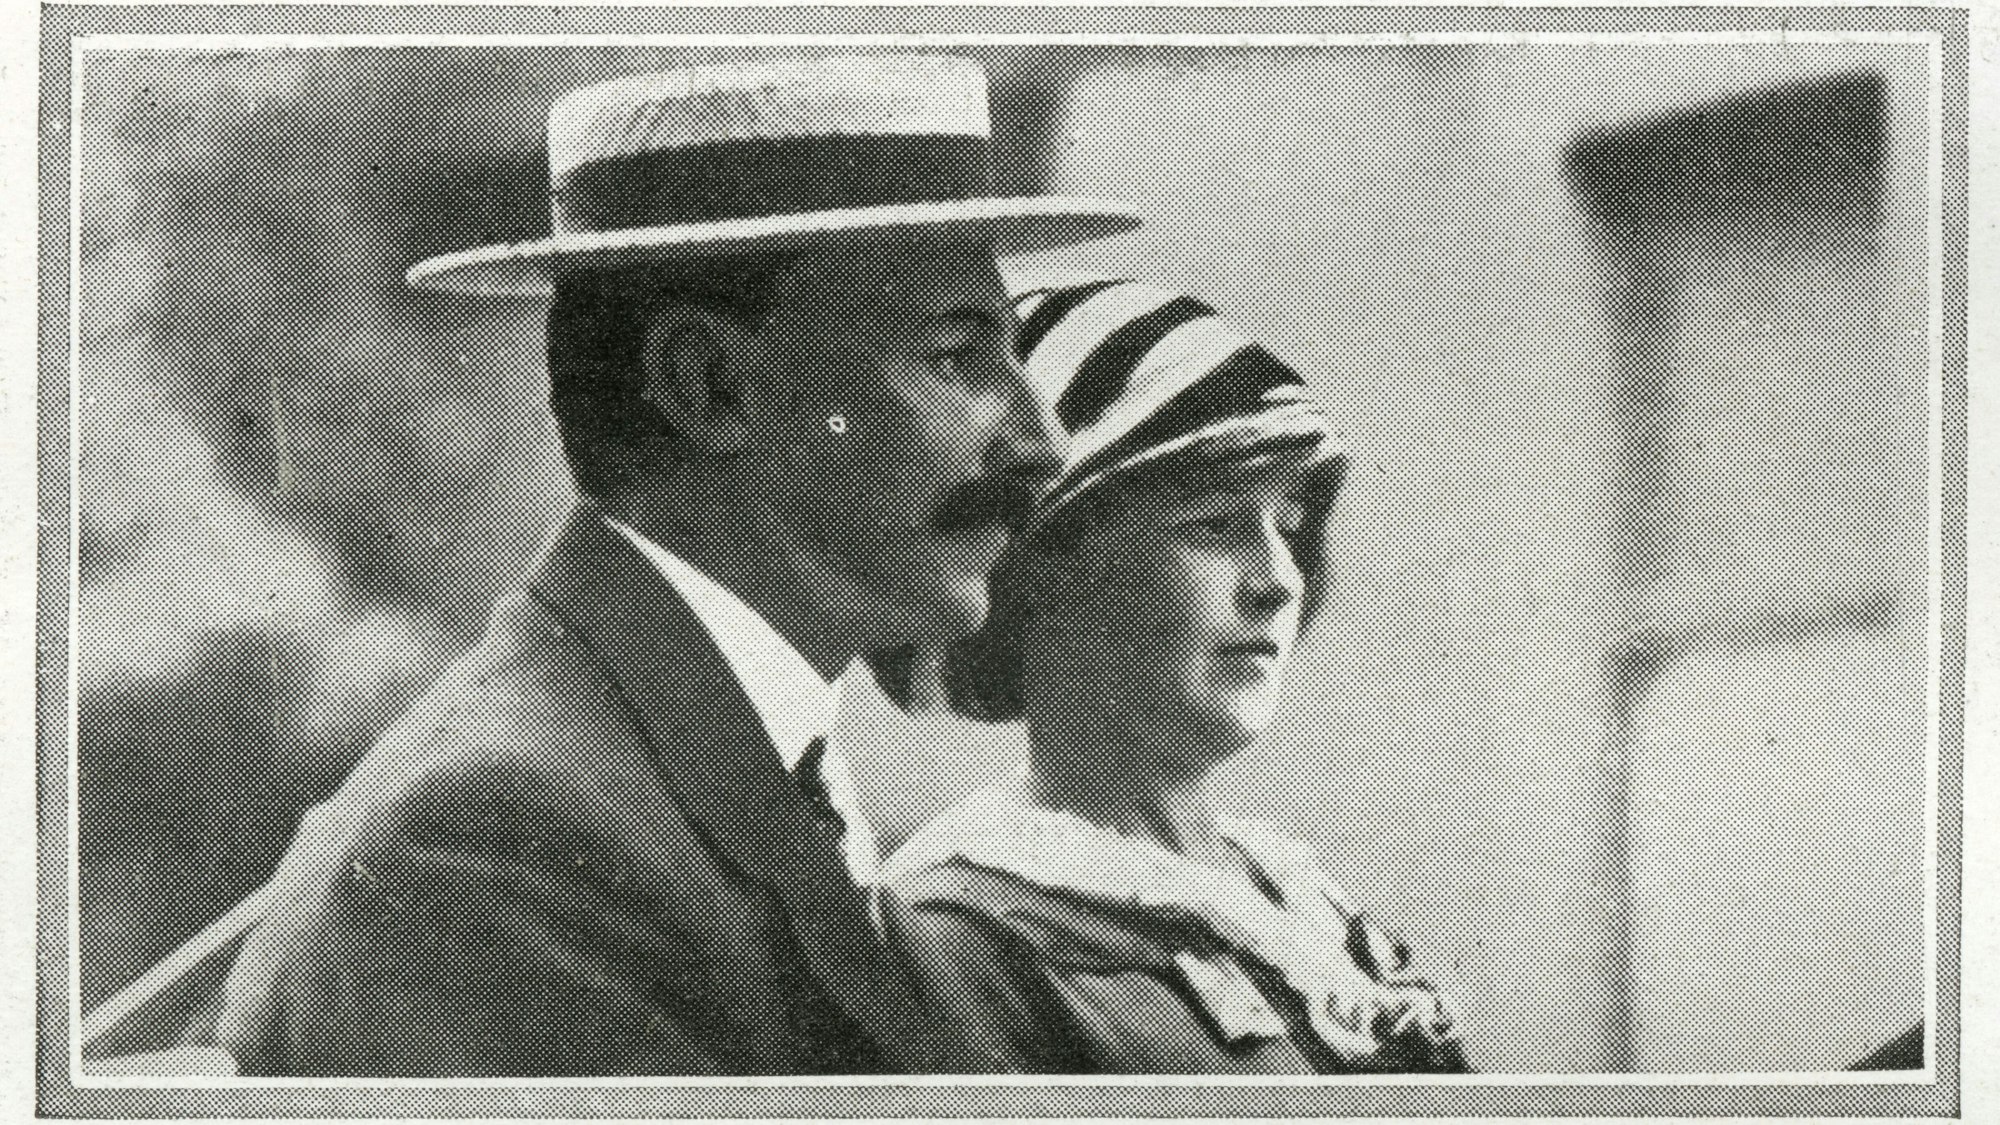 Der Zeitungsausschnitt zeigt Madeleine Astor (r) mit ihrem Mann Colonel John Jacob Astor IV.